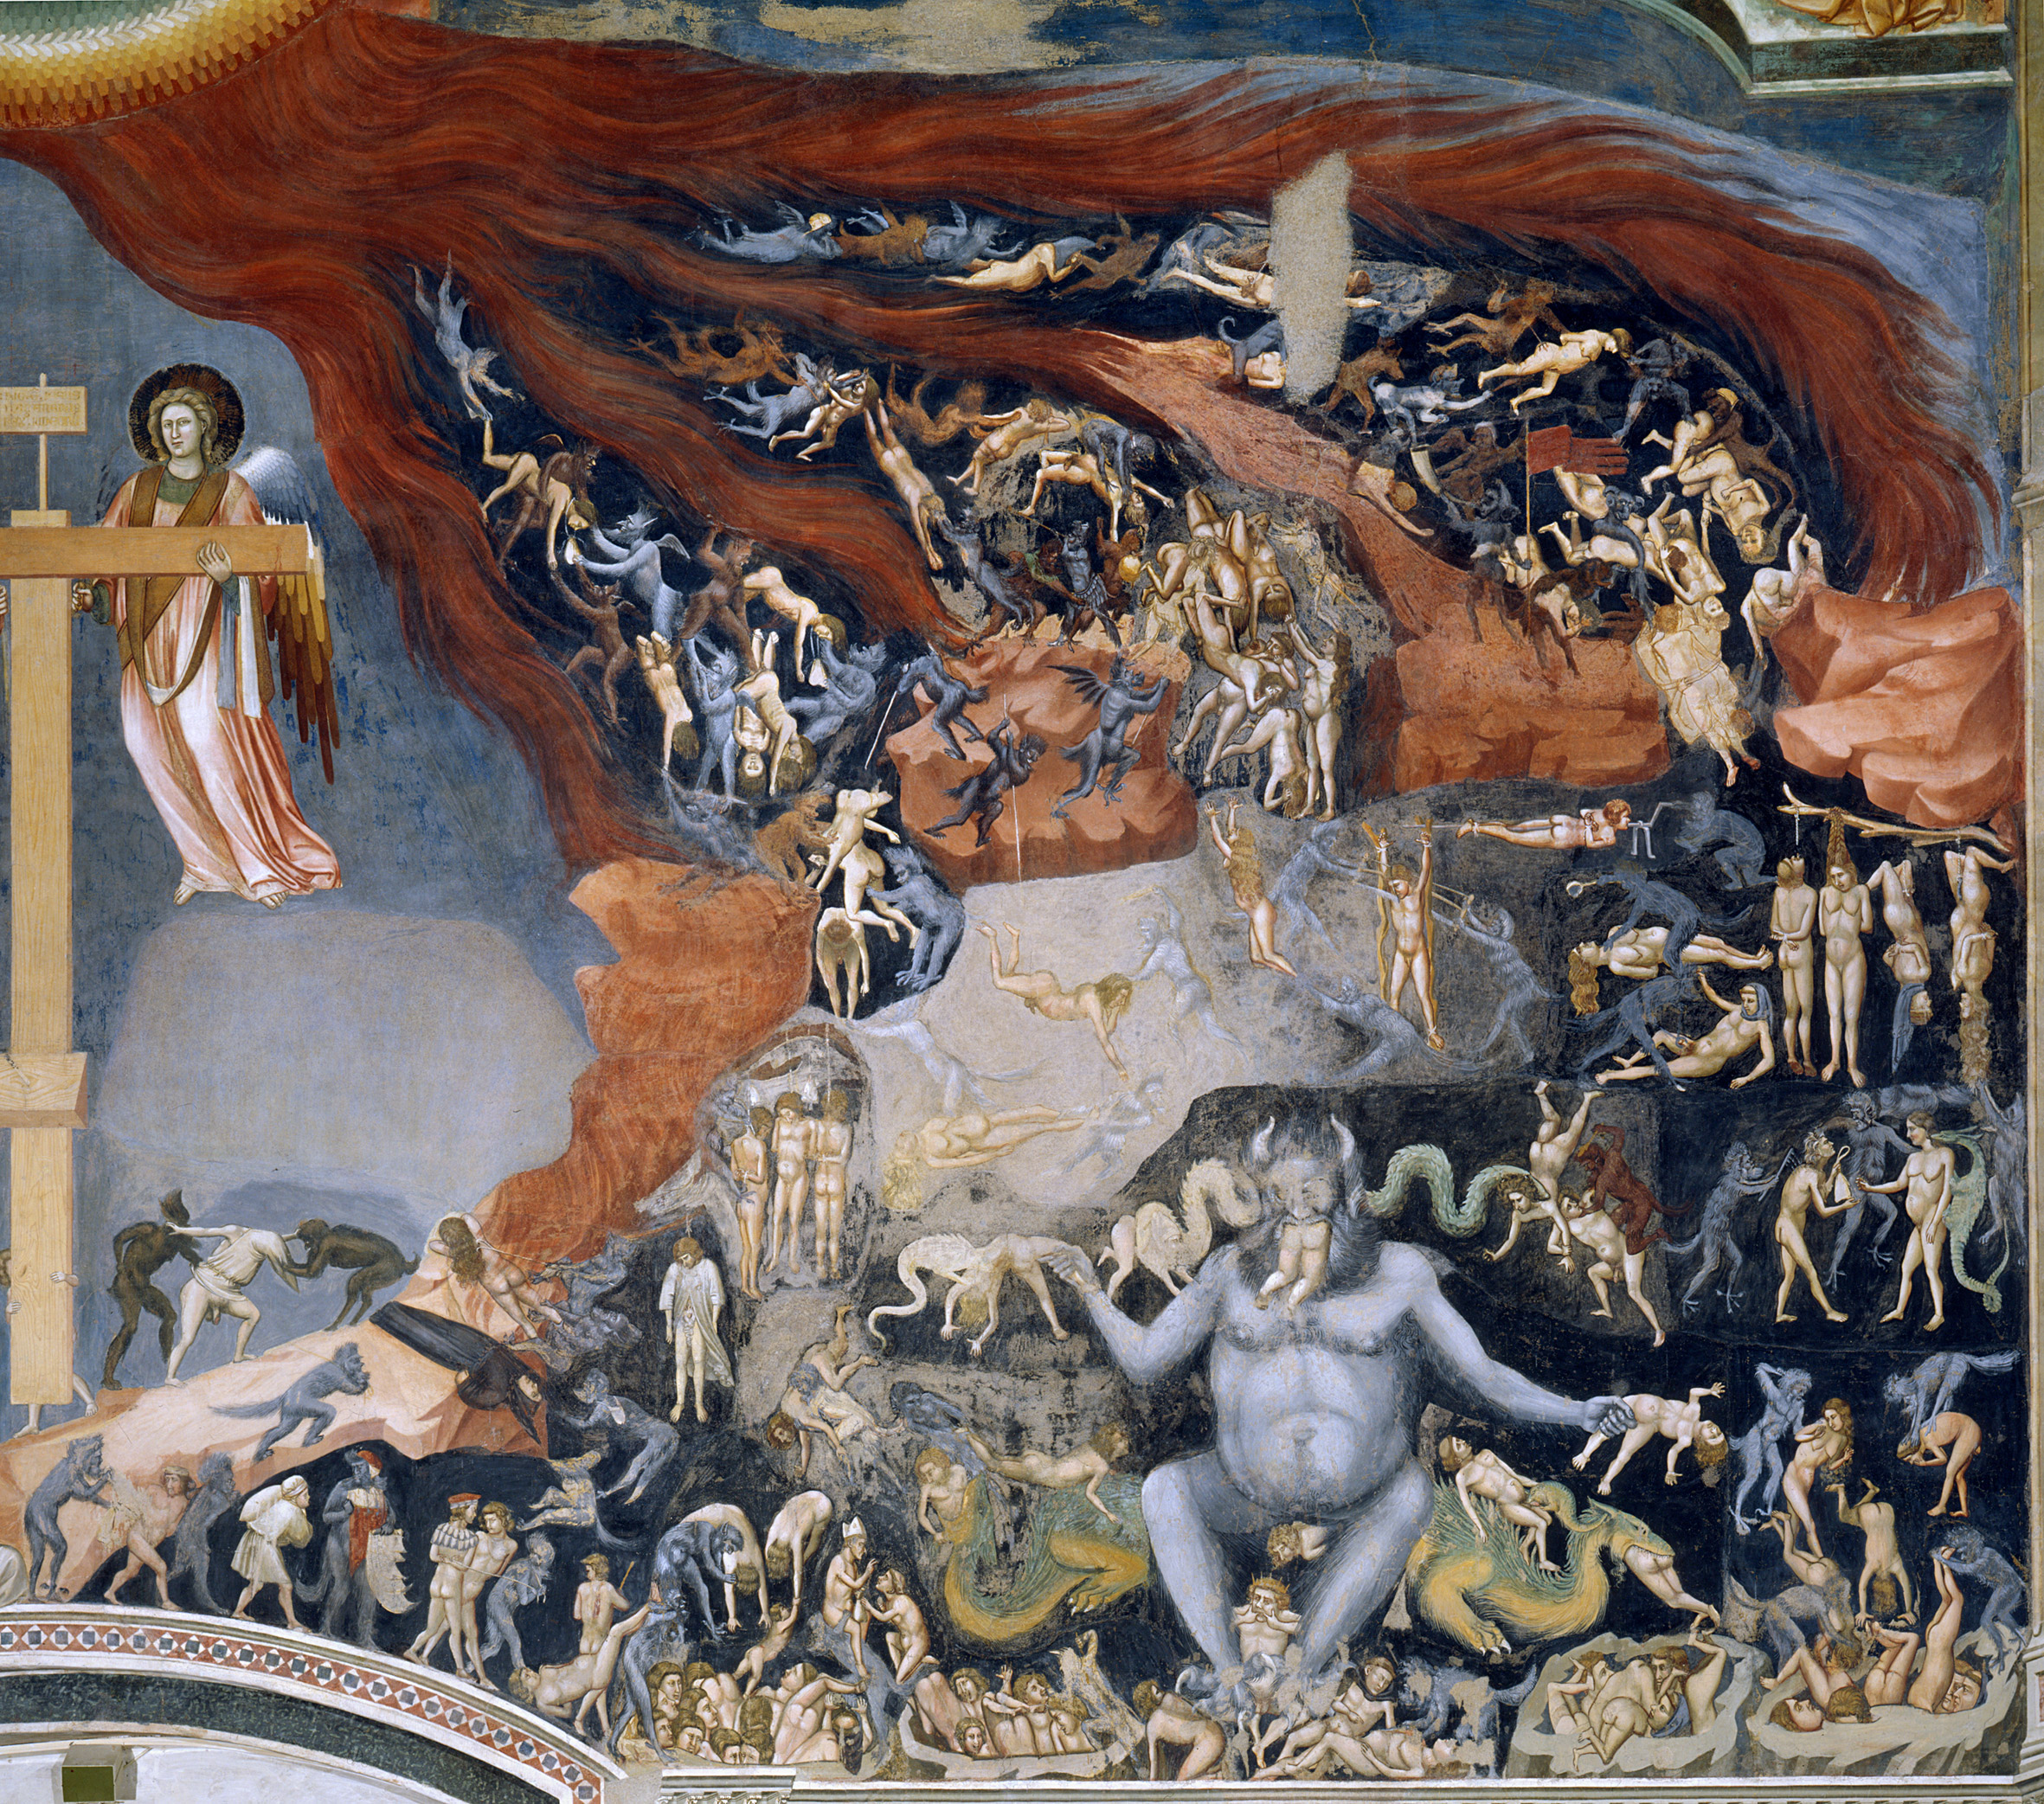 Infierno by Giotto di Bondone - 1305 Capilla de Los Scrovegni